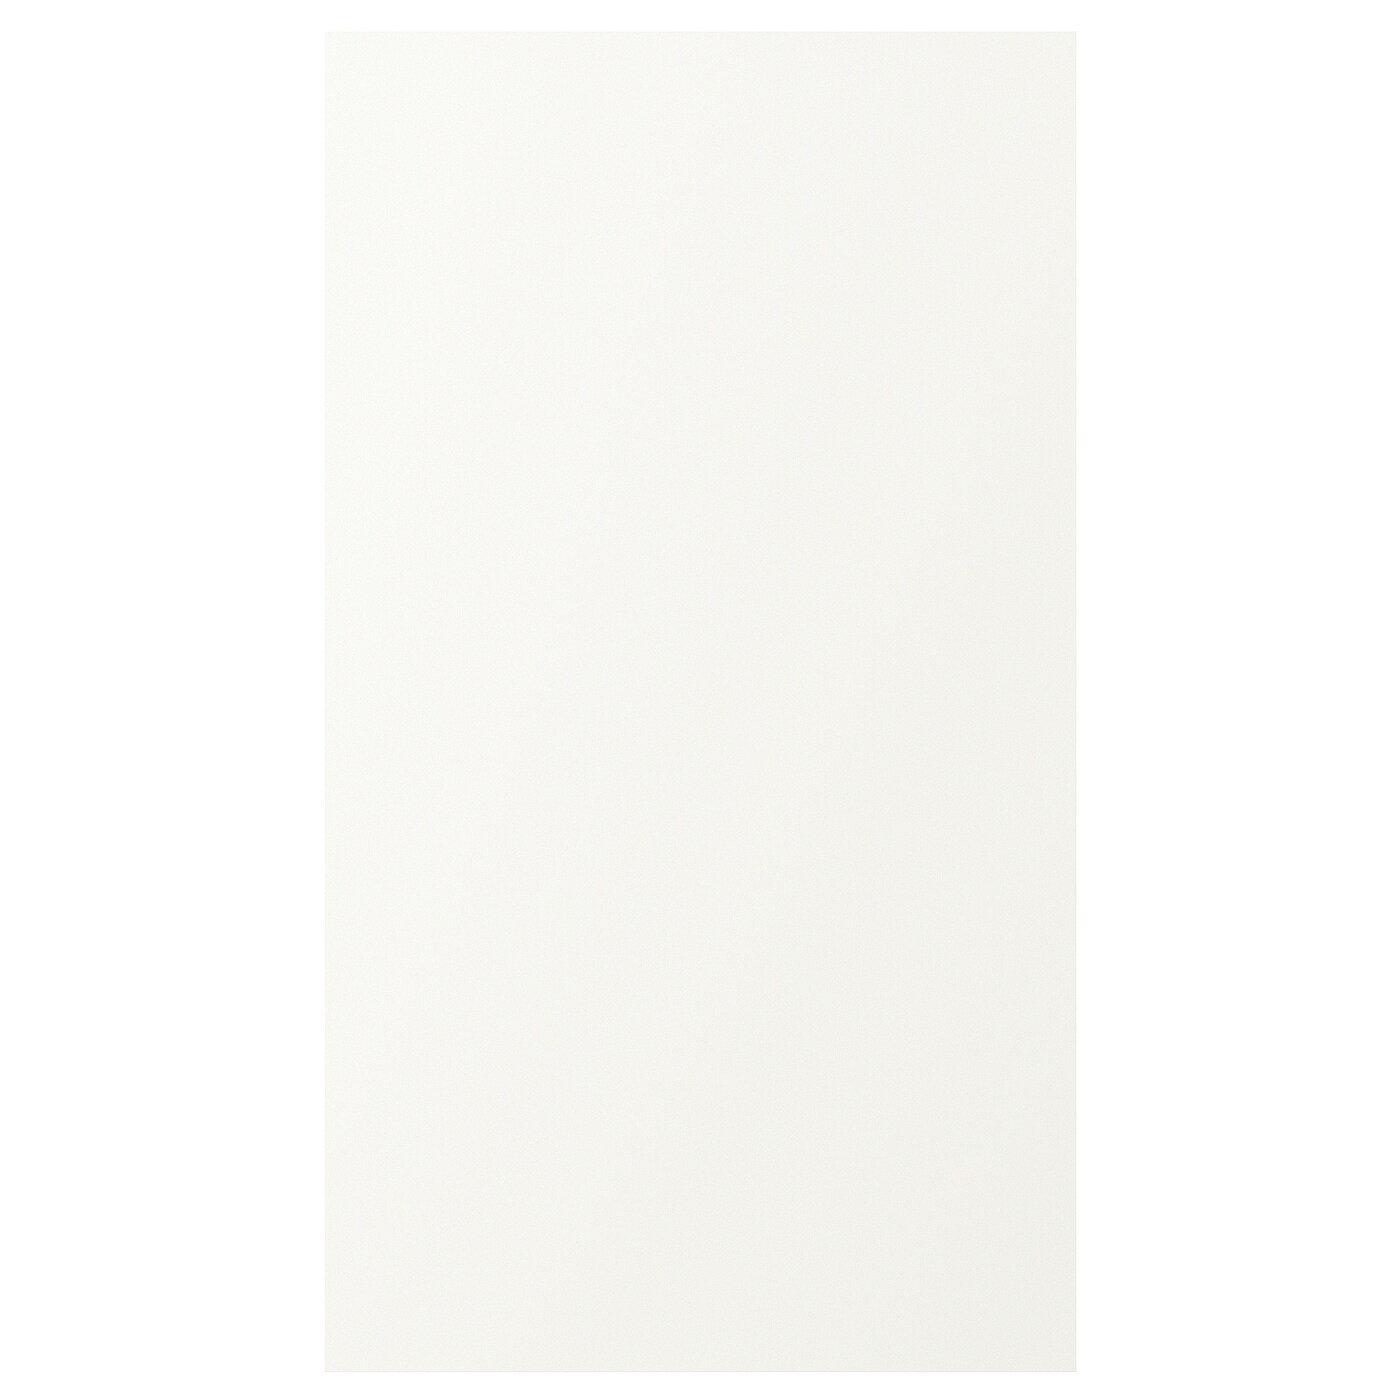 Передняя панель для посудомоечной машины - VALLSTENA IKEA /ВАЛЬСТЕНА ИКЕА, 62х80 см, белый